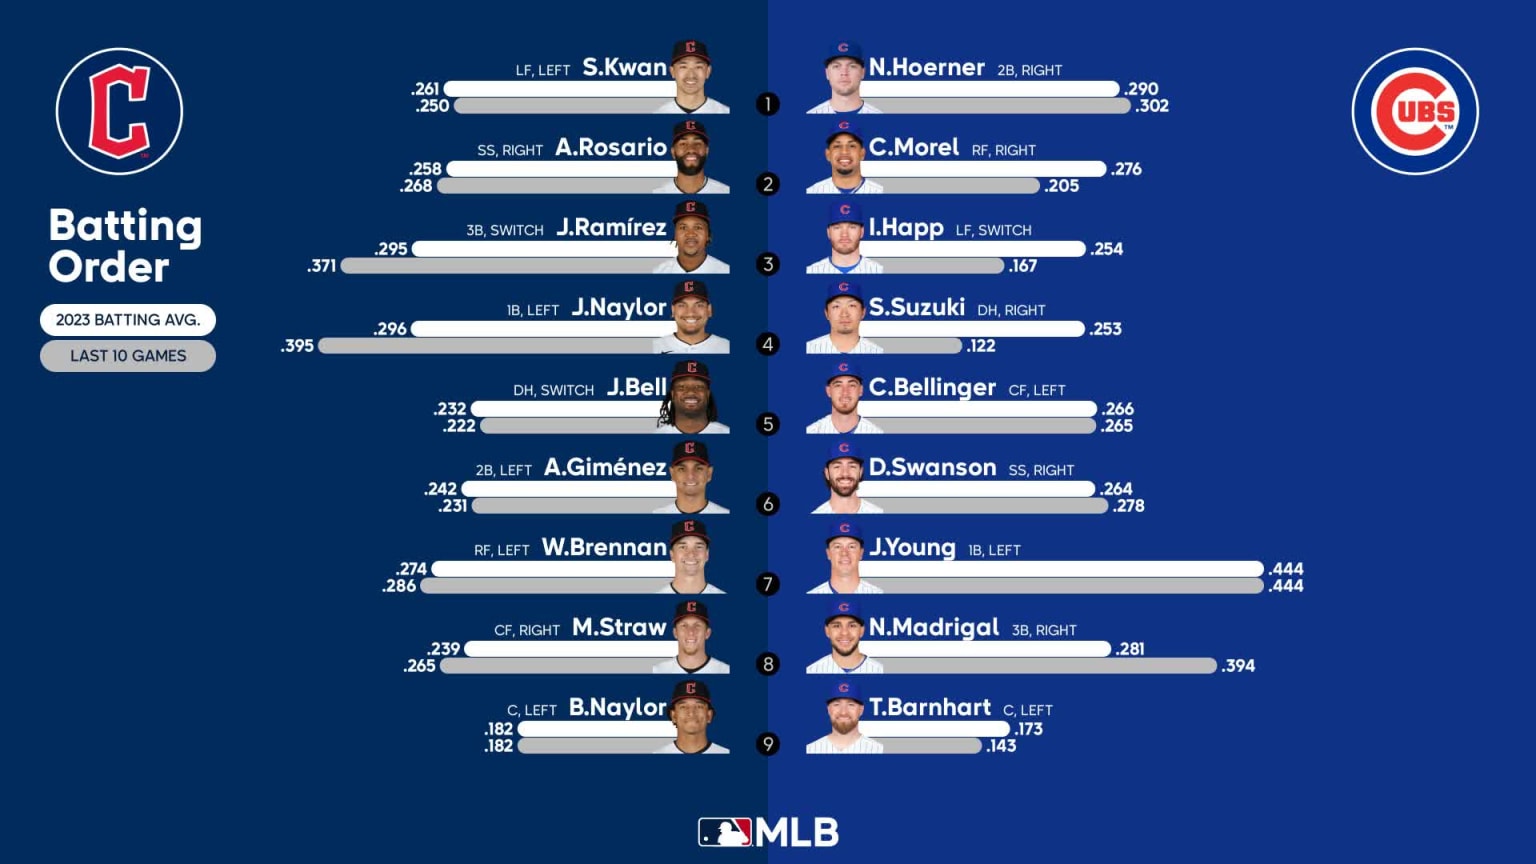 2016 MLB playoffs results